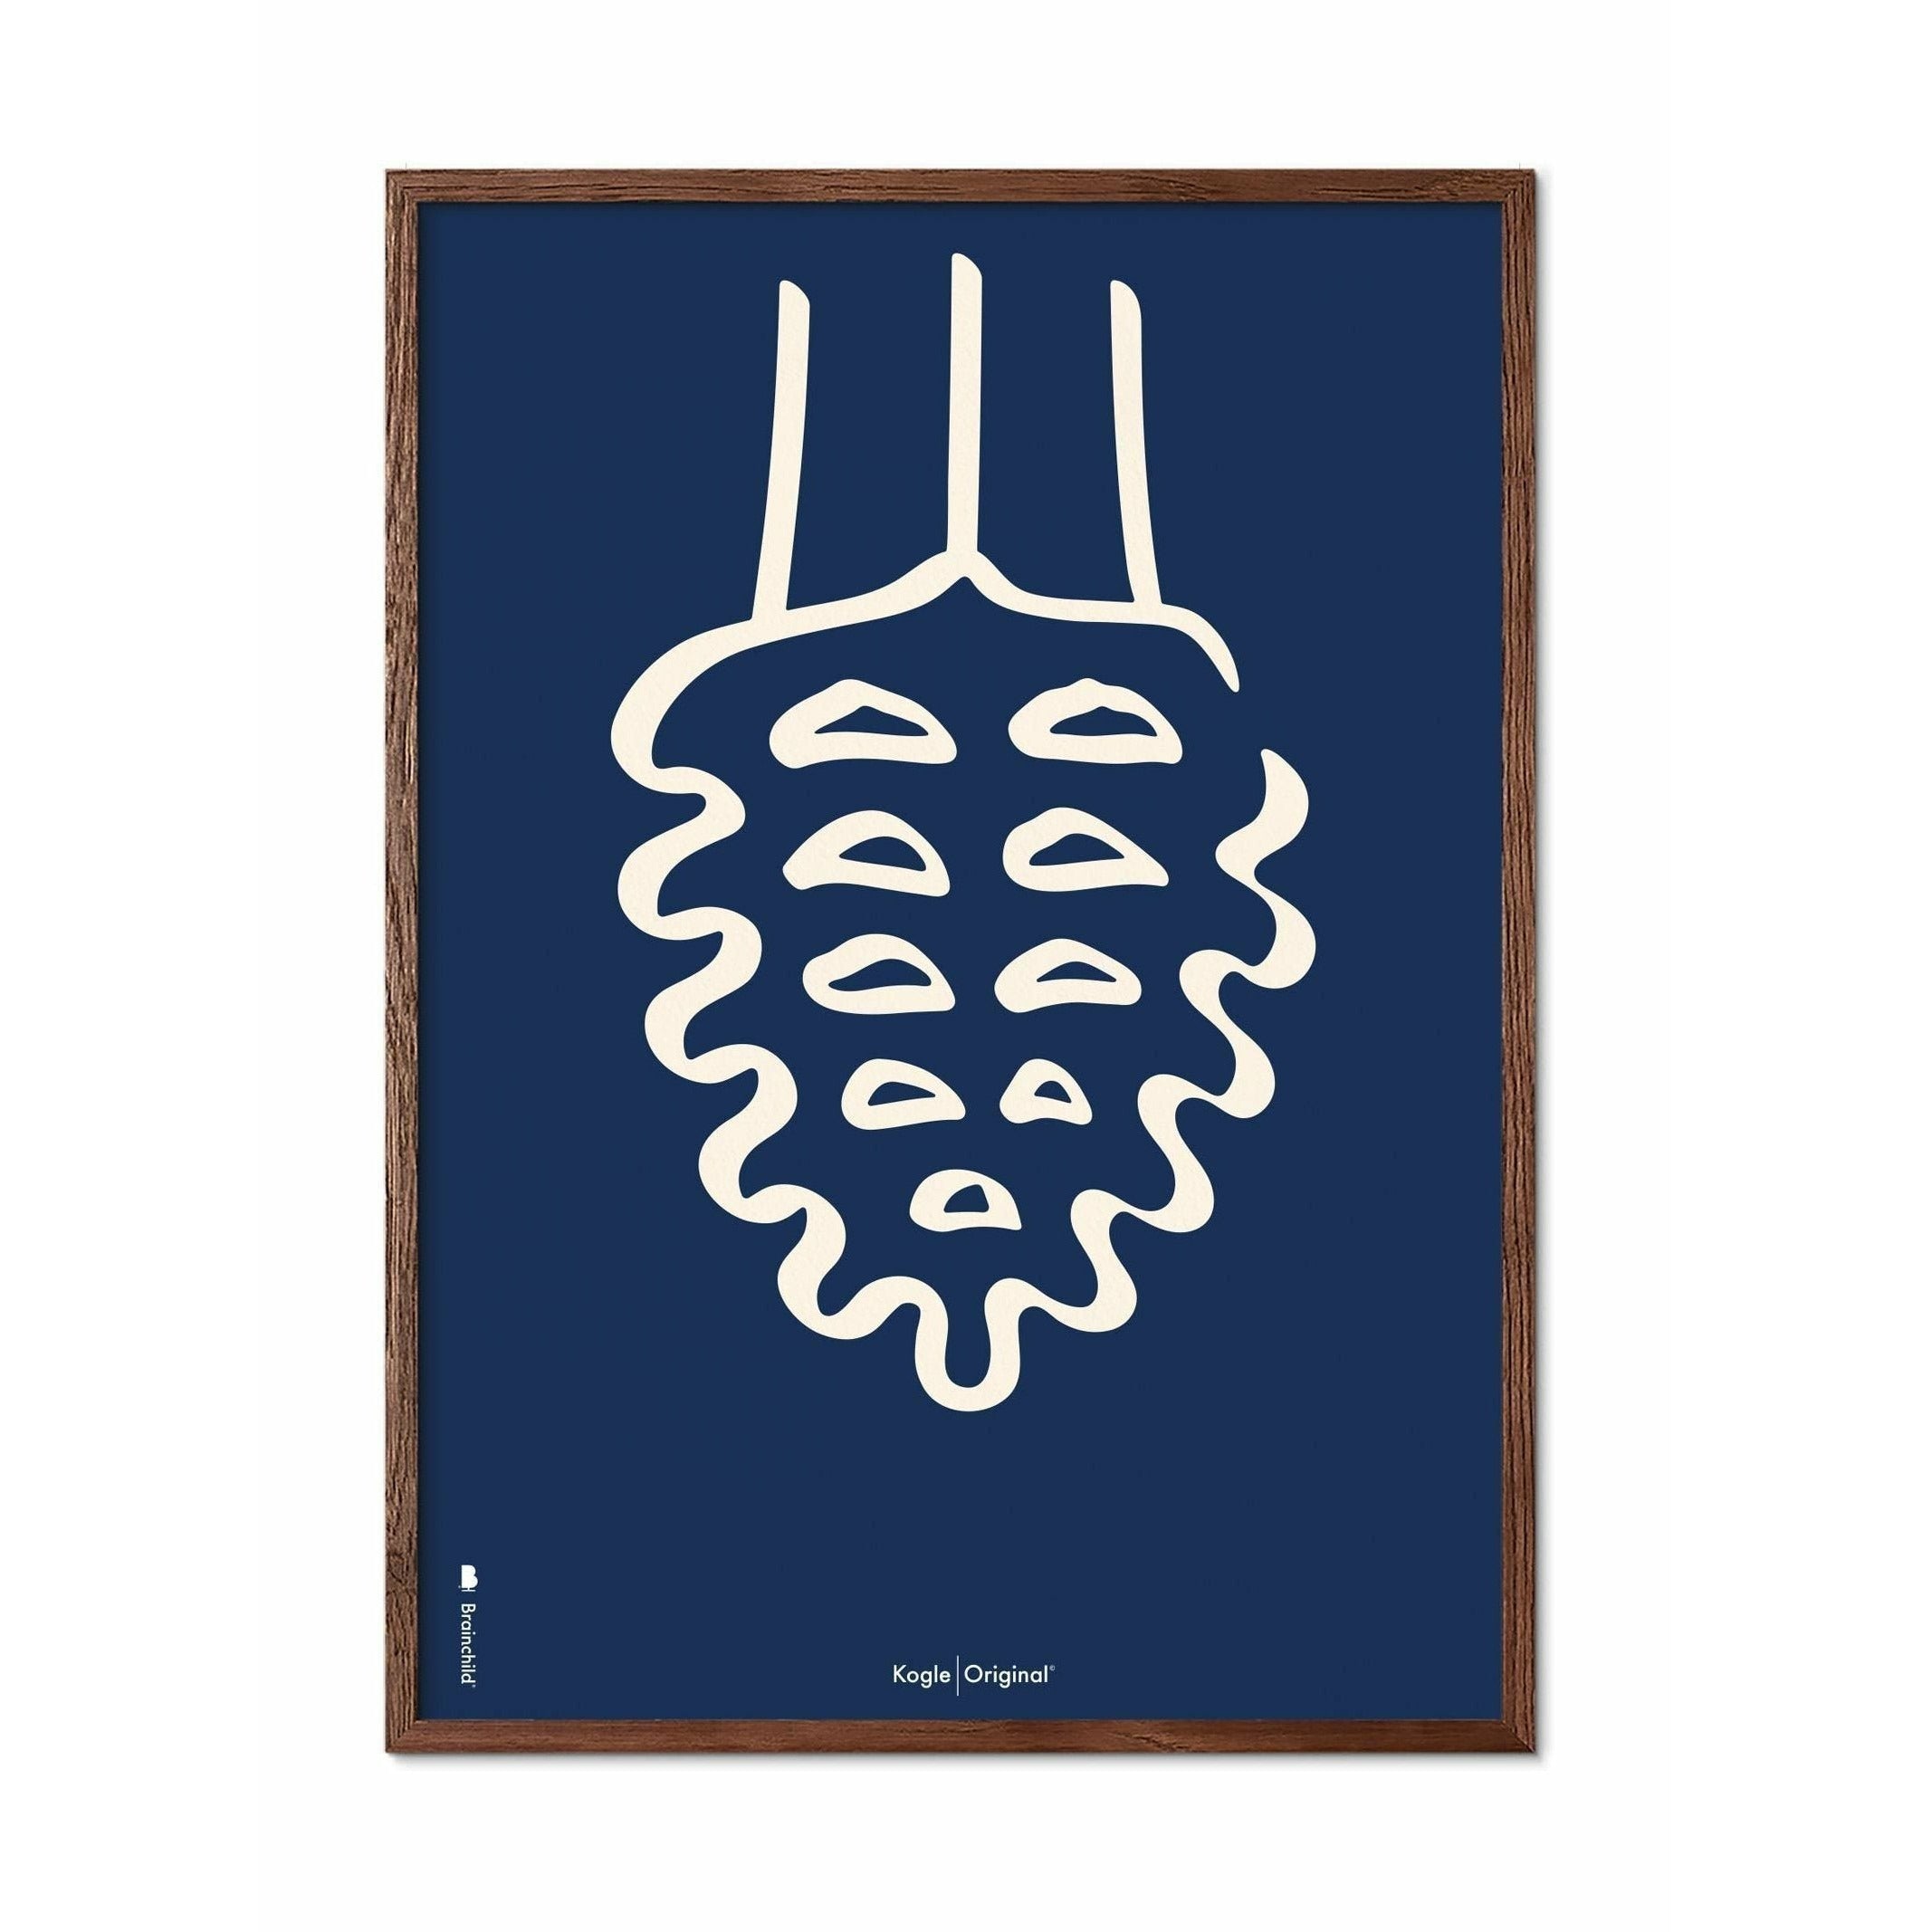 创生的松树锥线海报，由深木70x100厘米制成的框架，蓝色背景